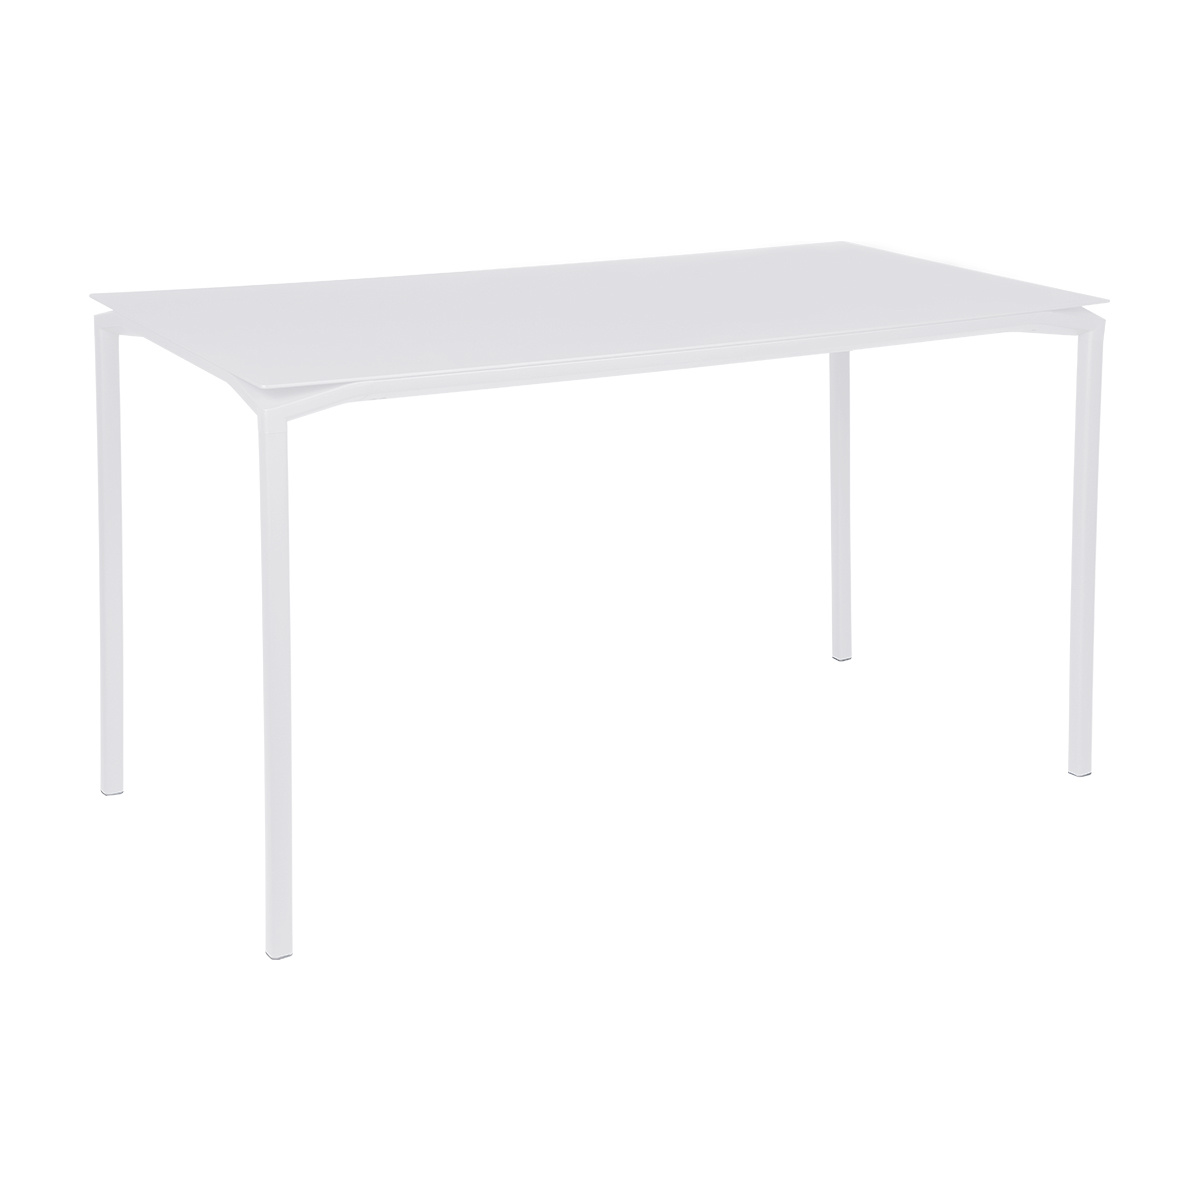 Fermob - Calvi Gartentisch hoch 160x80cm - baumwollweiß/texturiert/LxBxH 160x80x92cm/UV-beständig von Fermob